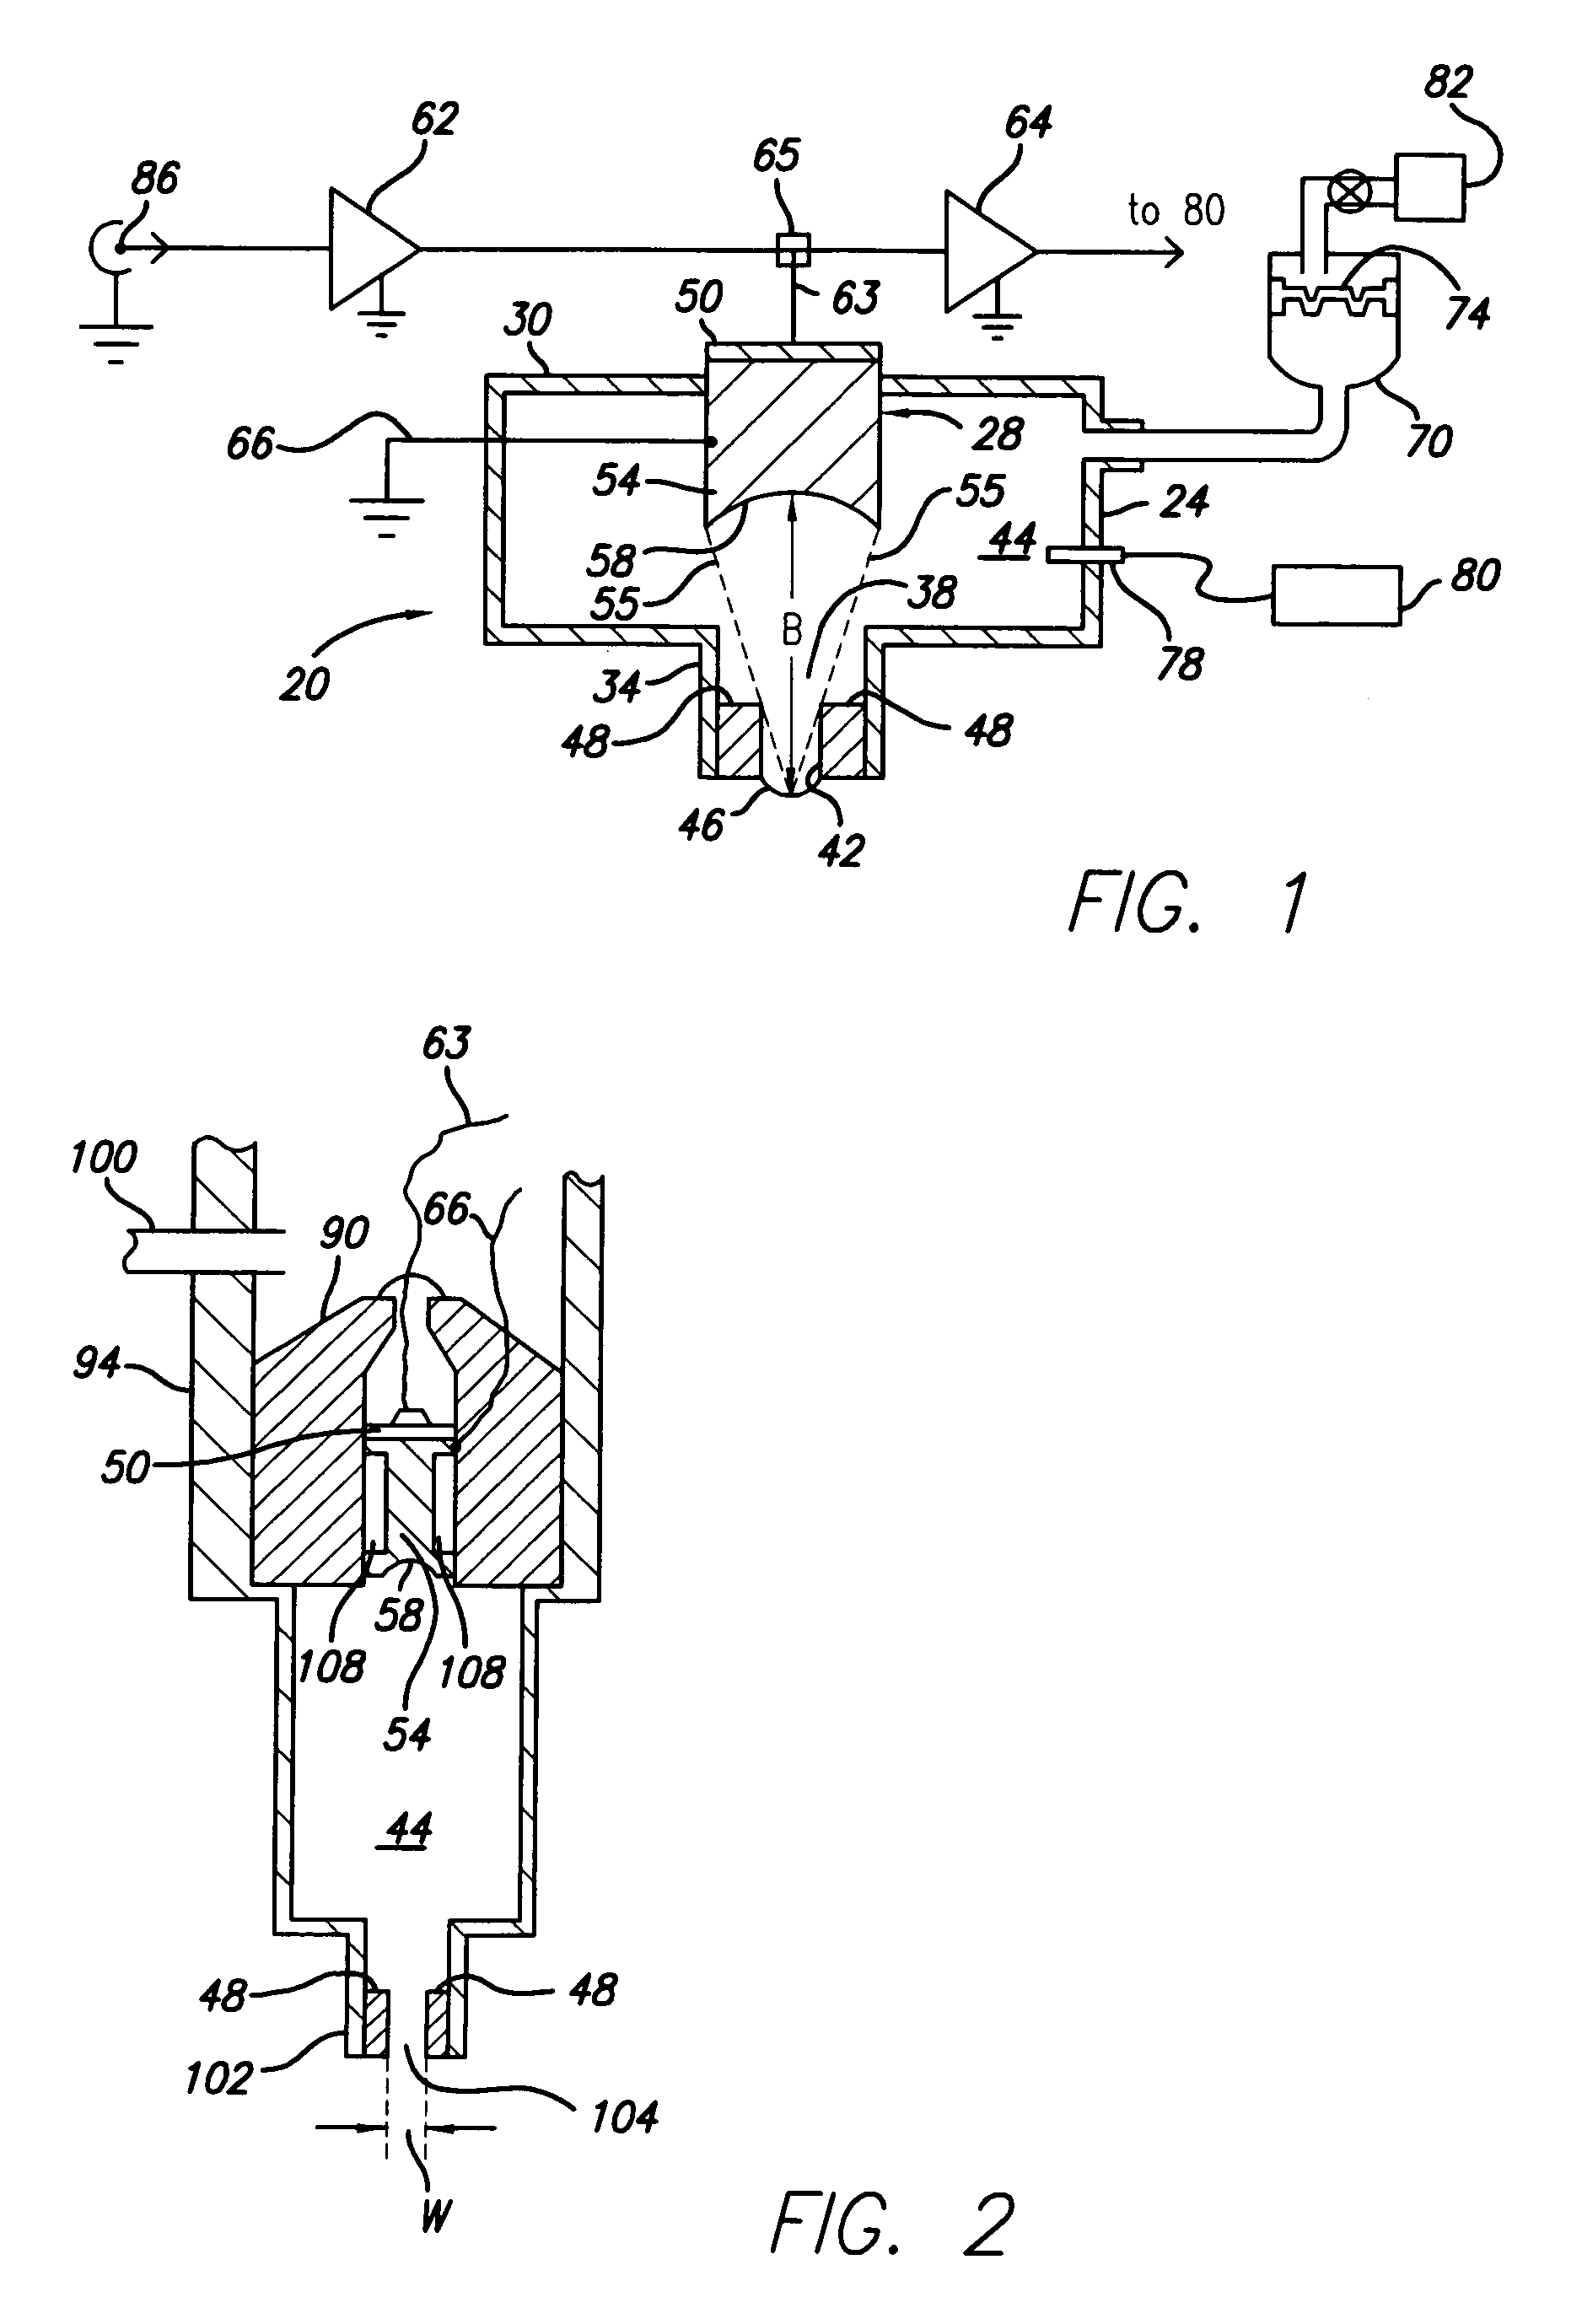 Acoustic liquid dispensing apparatus